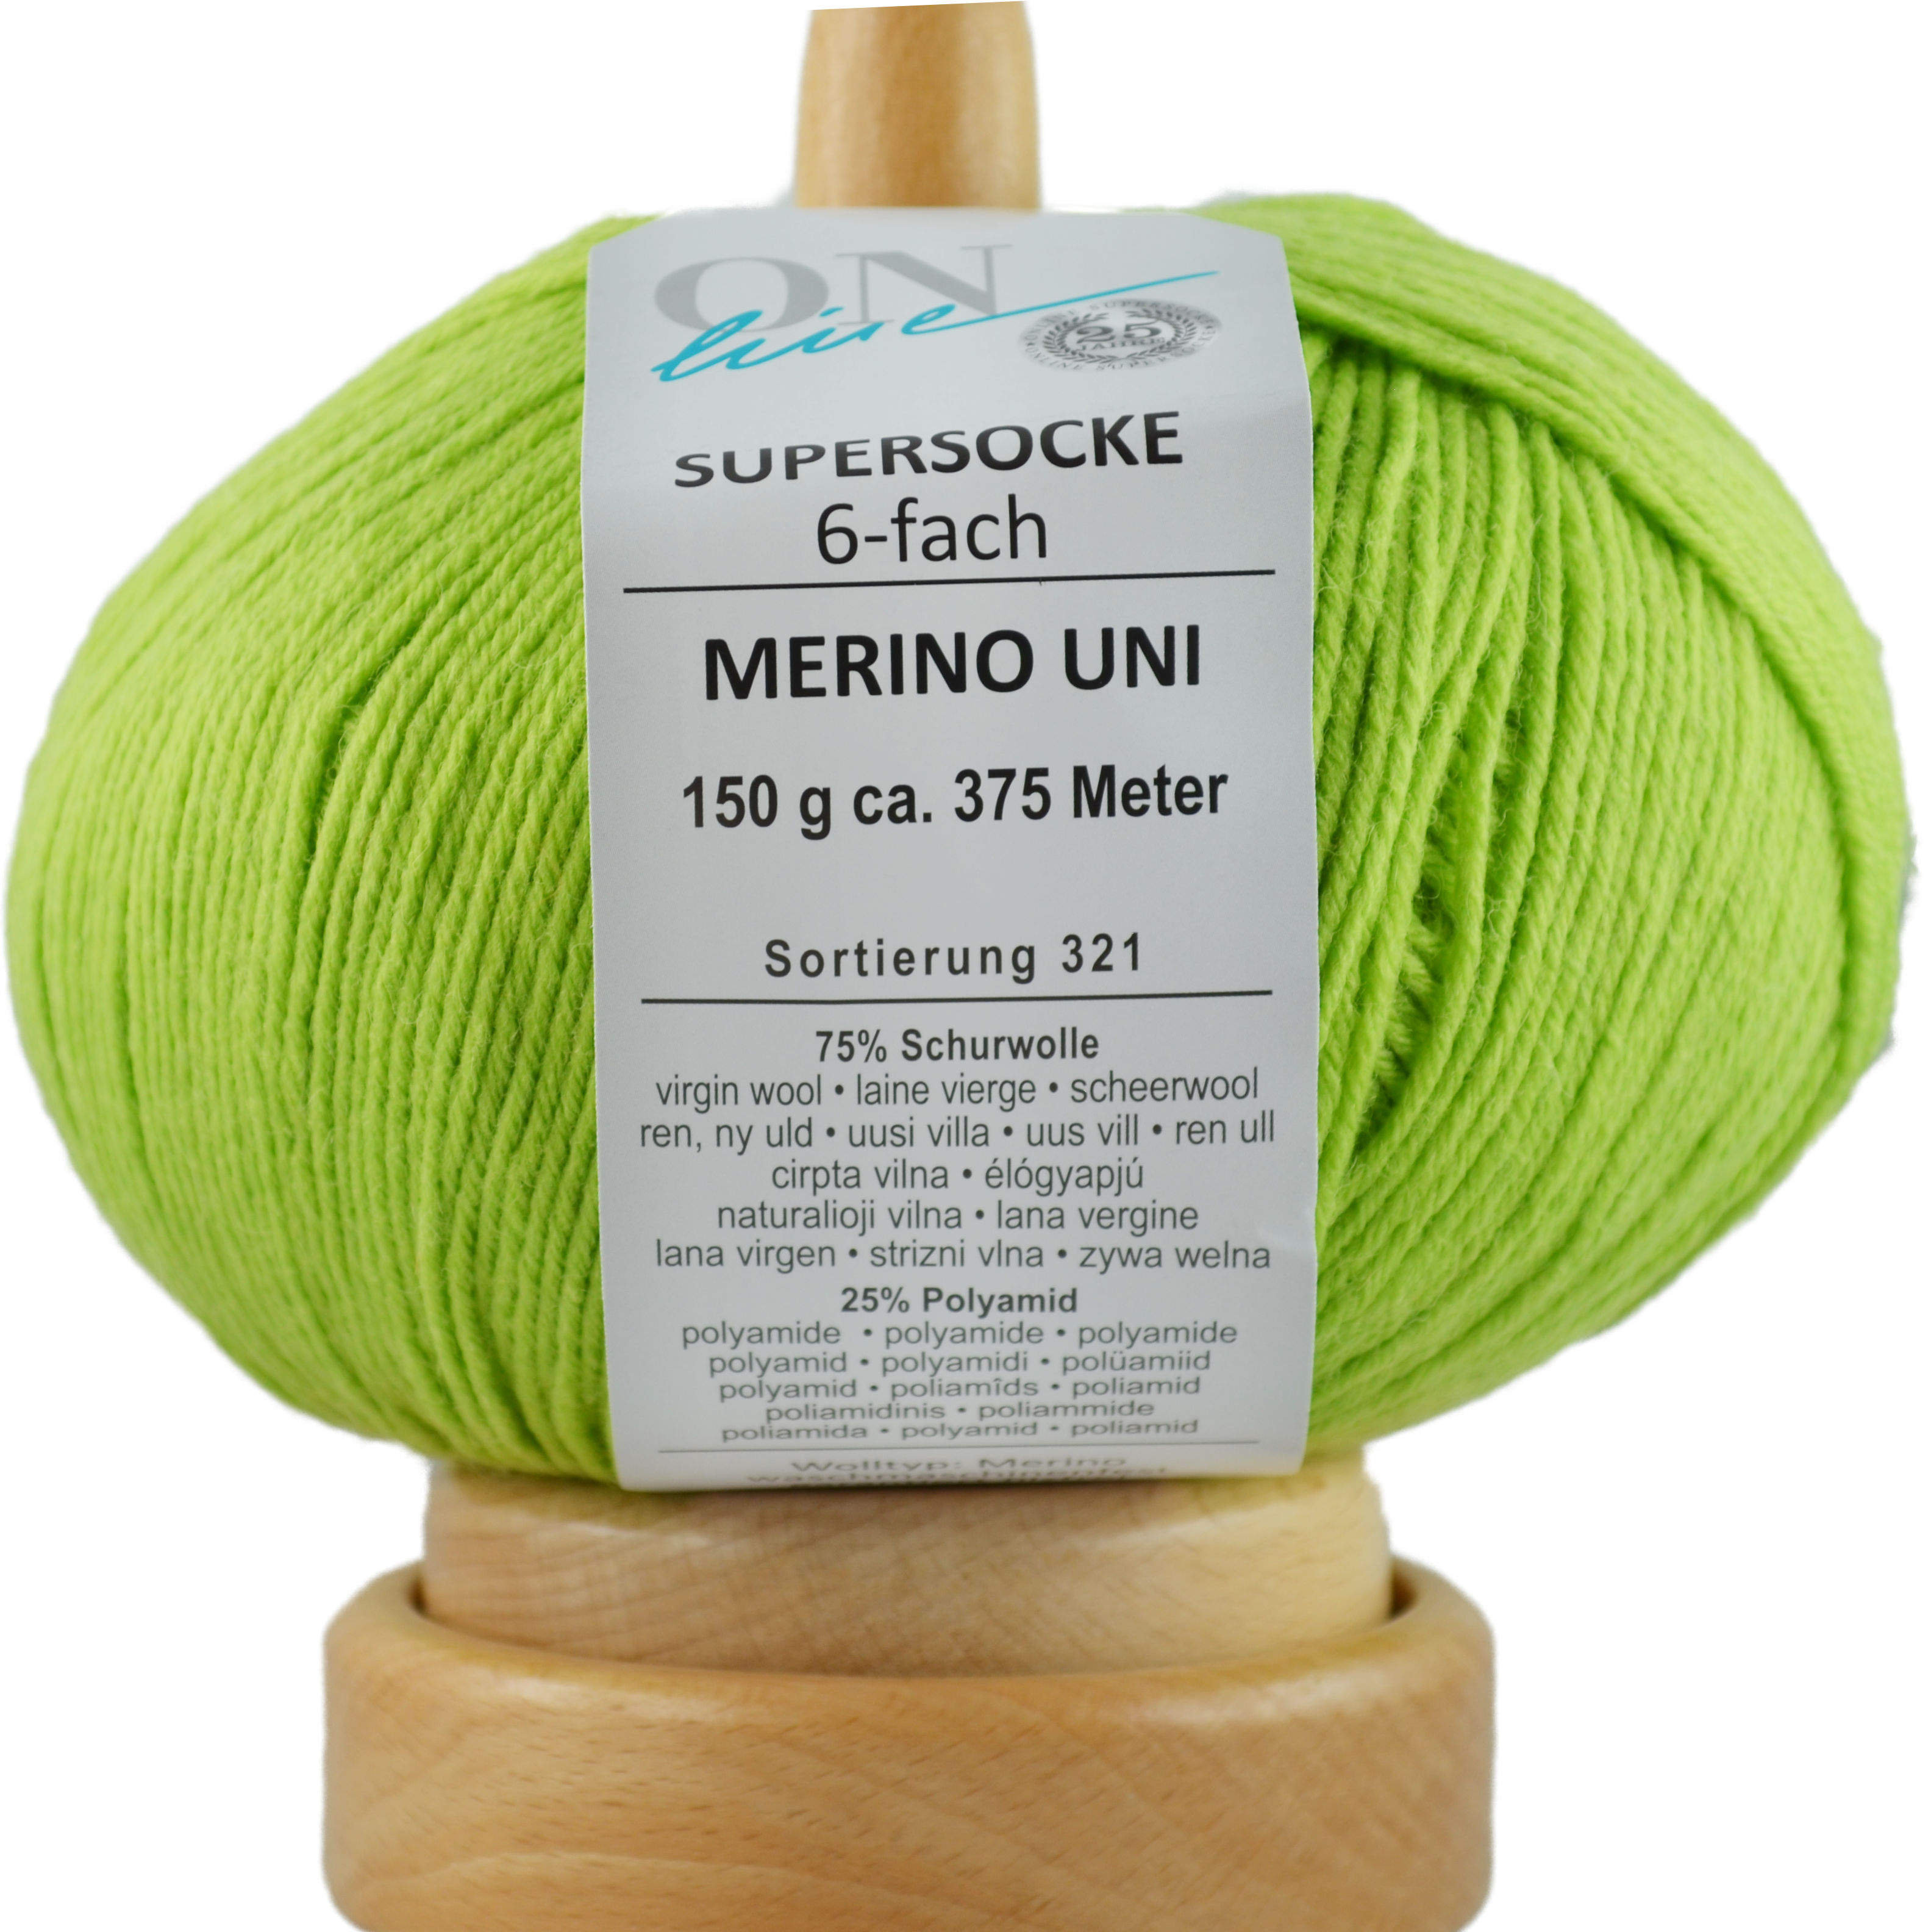 Supersocke 6-fach Merino Uni von ONline Sort. 321 - 5005 - giftgrün